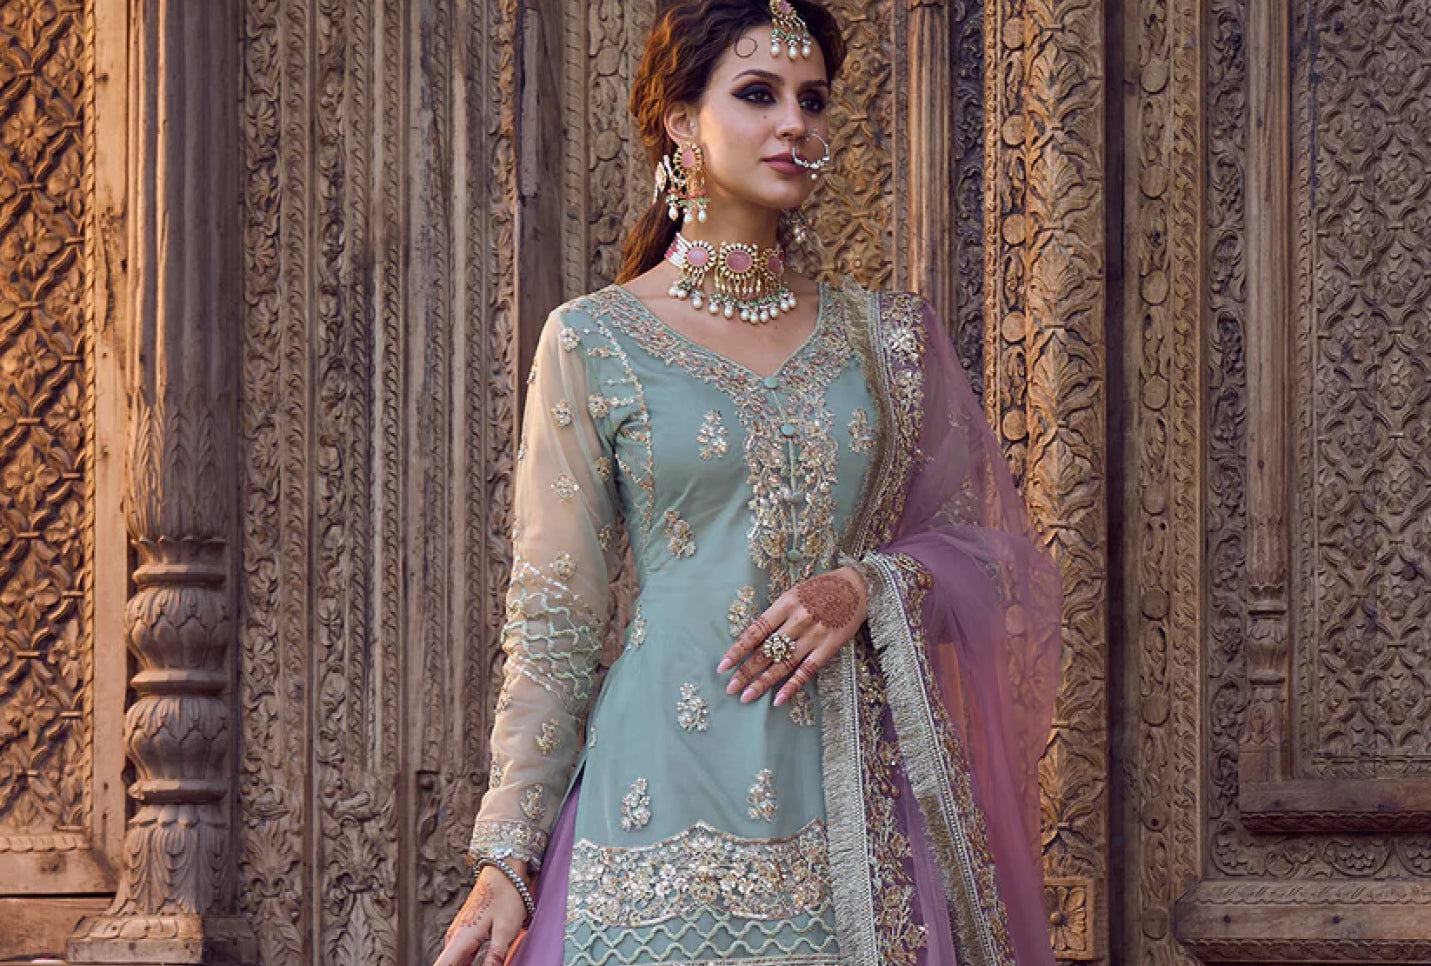 Women Party Wear Kurti Palazzo Indian Handmade Fully Stitched Naira Cut  Dress | eBay